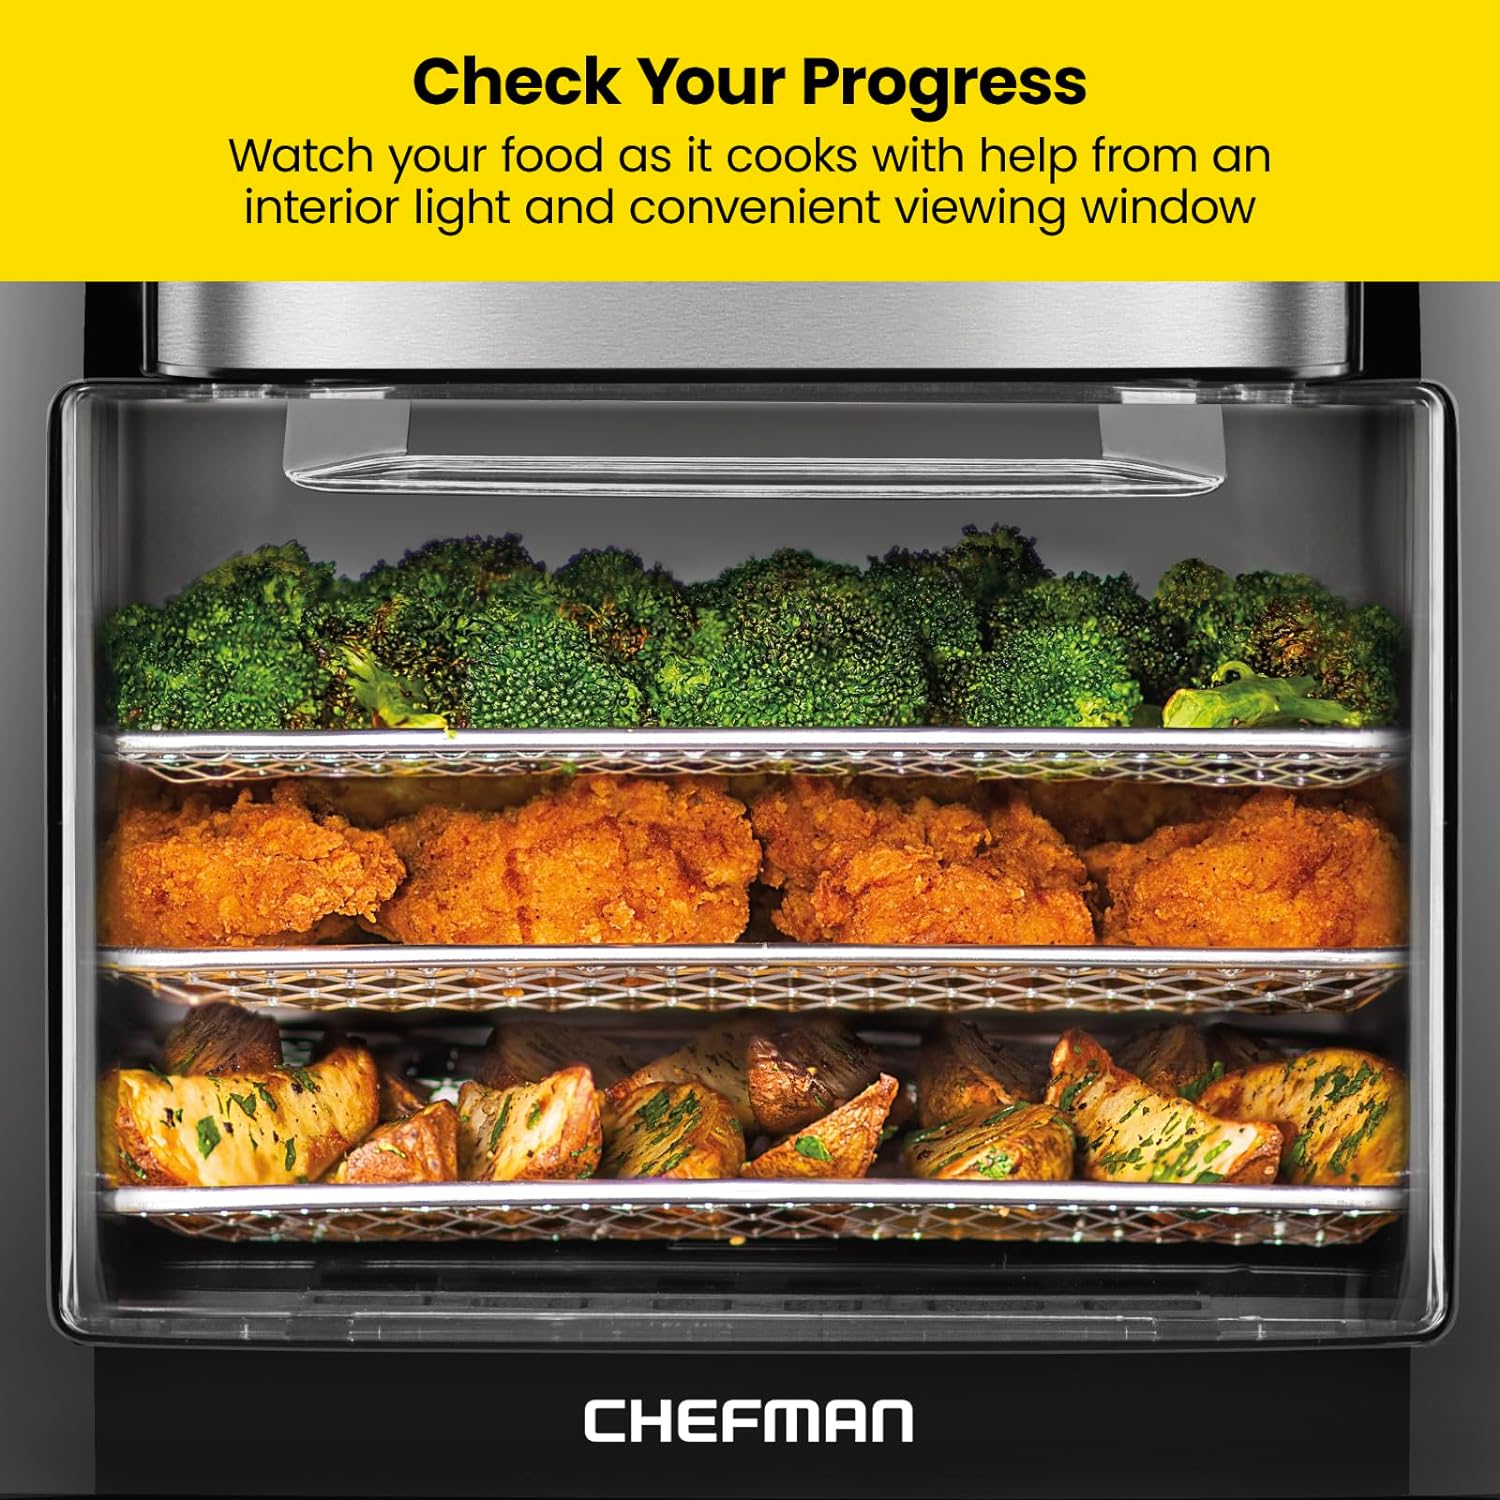 Chefman - Freidora digital multifuncional + asador, deshidratador, horno de convección, 17 preselecciones en pantalla táctil para freír, asar, deshidratar y hornear accesorios incluidos, L 10L, negro